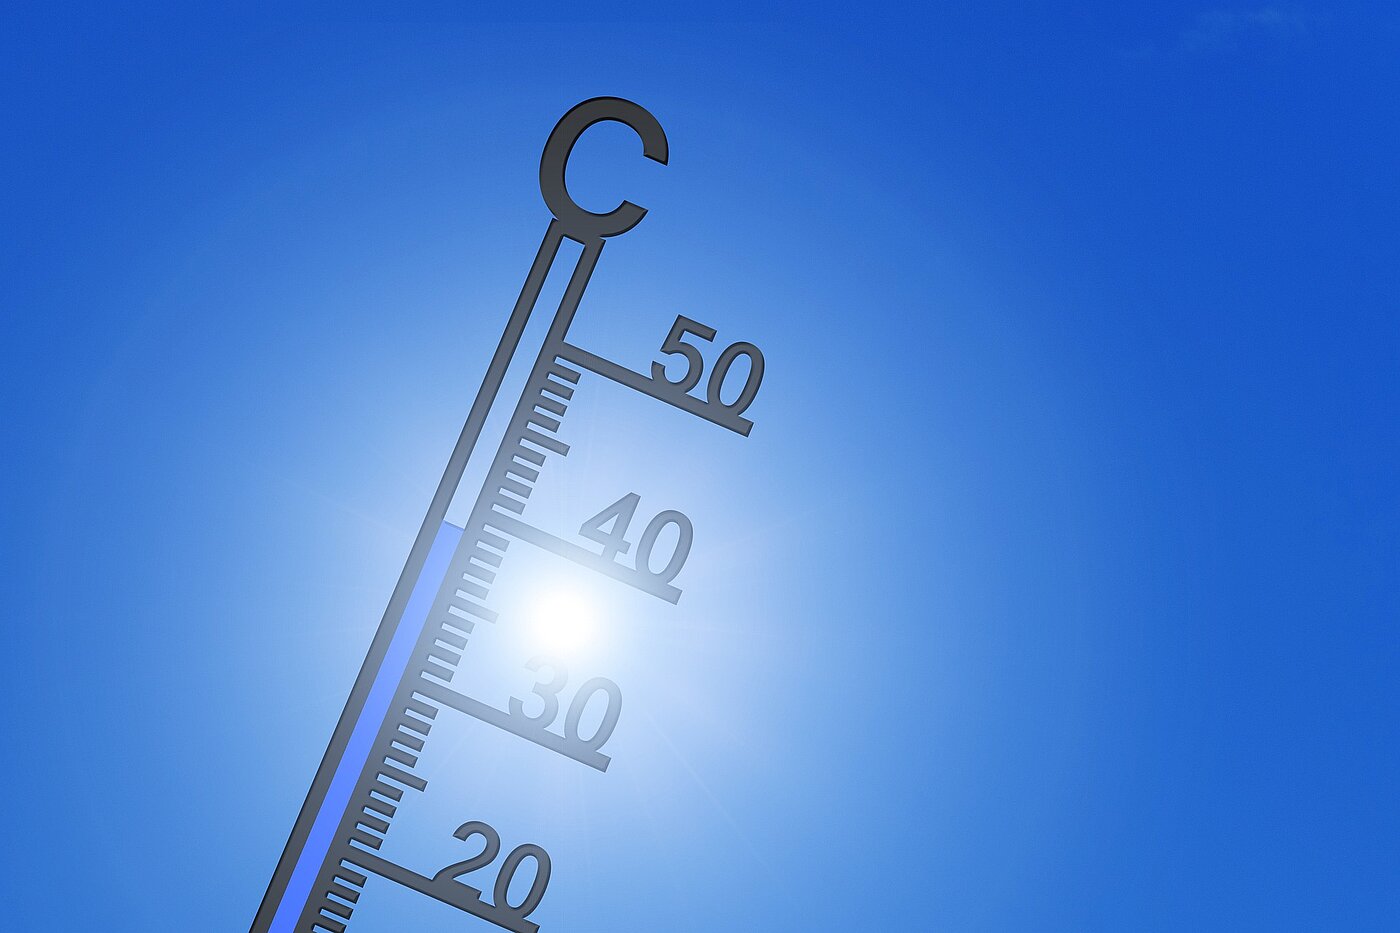 Grafik mit Thermometer vor blauem Himmel.